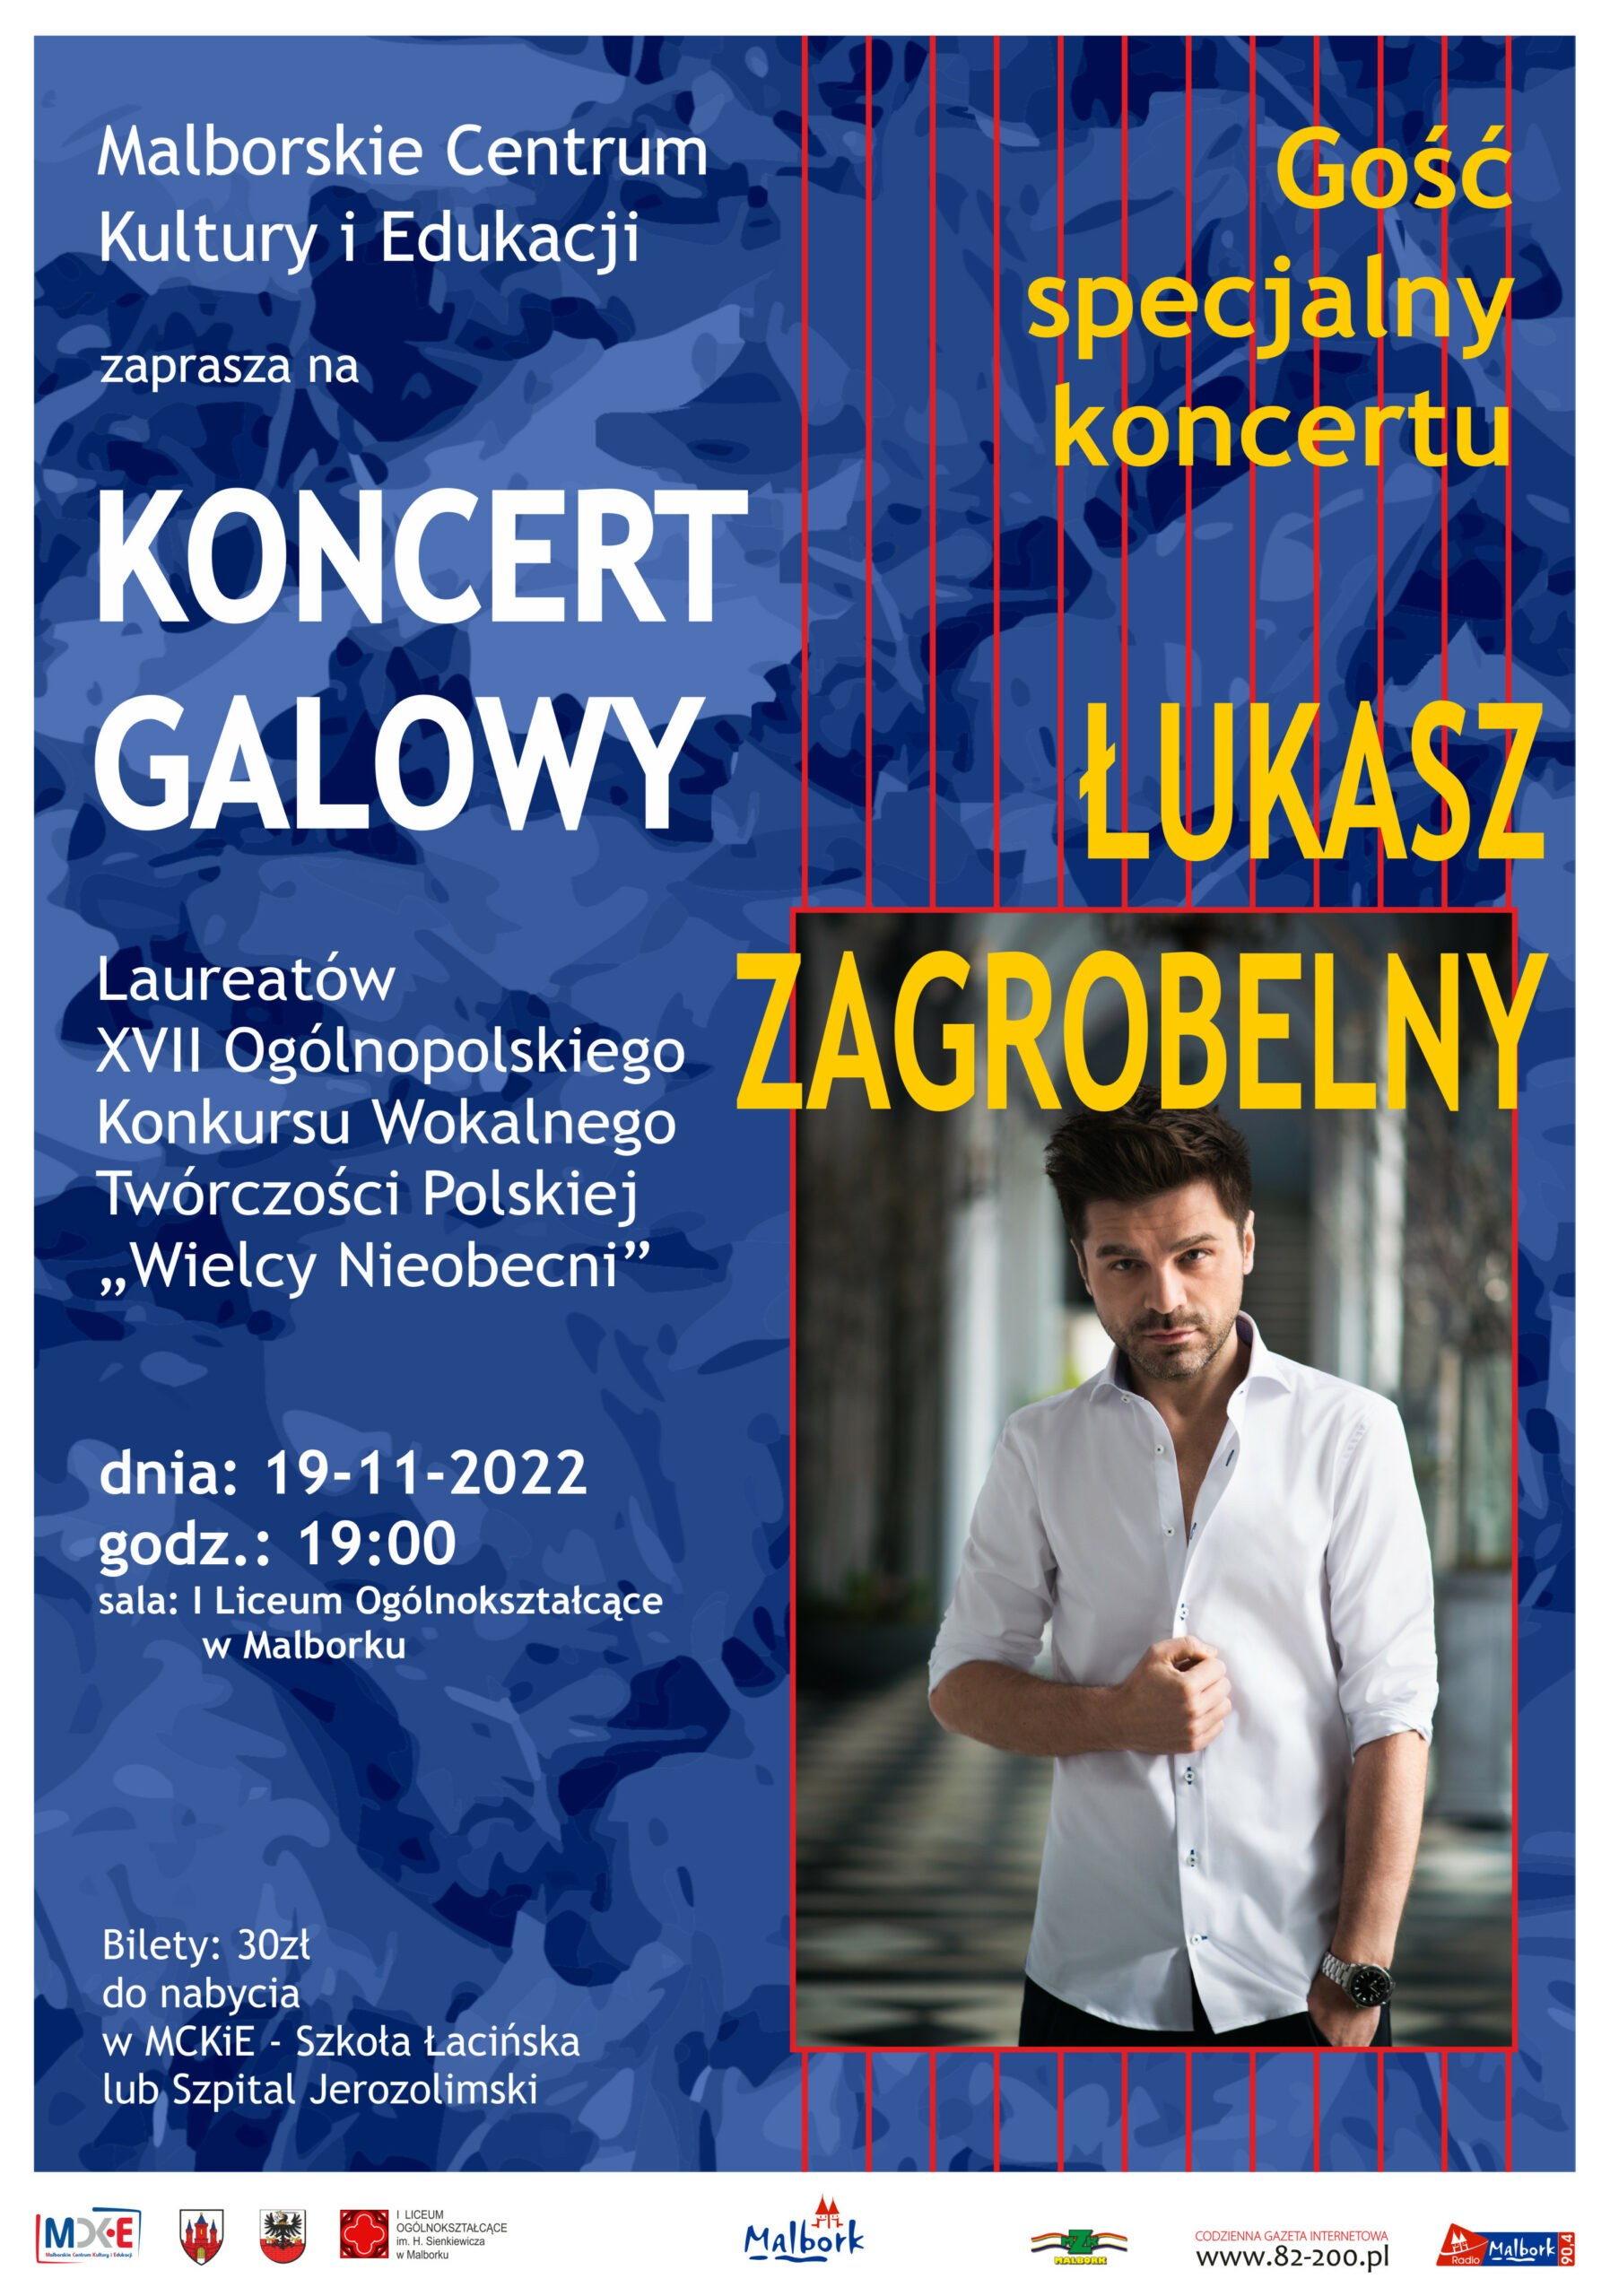 Łukasz Zagrobelny – koncert galowy